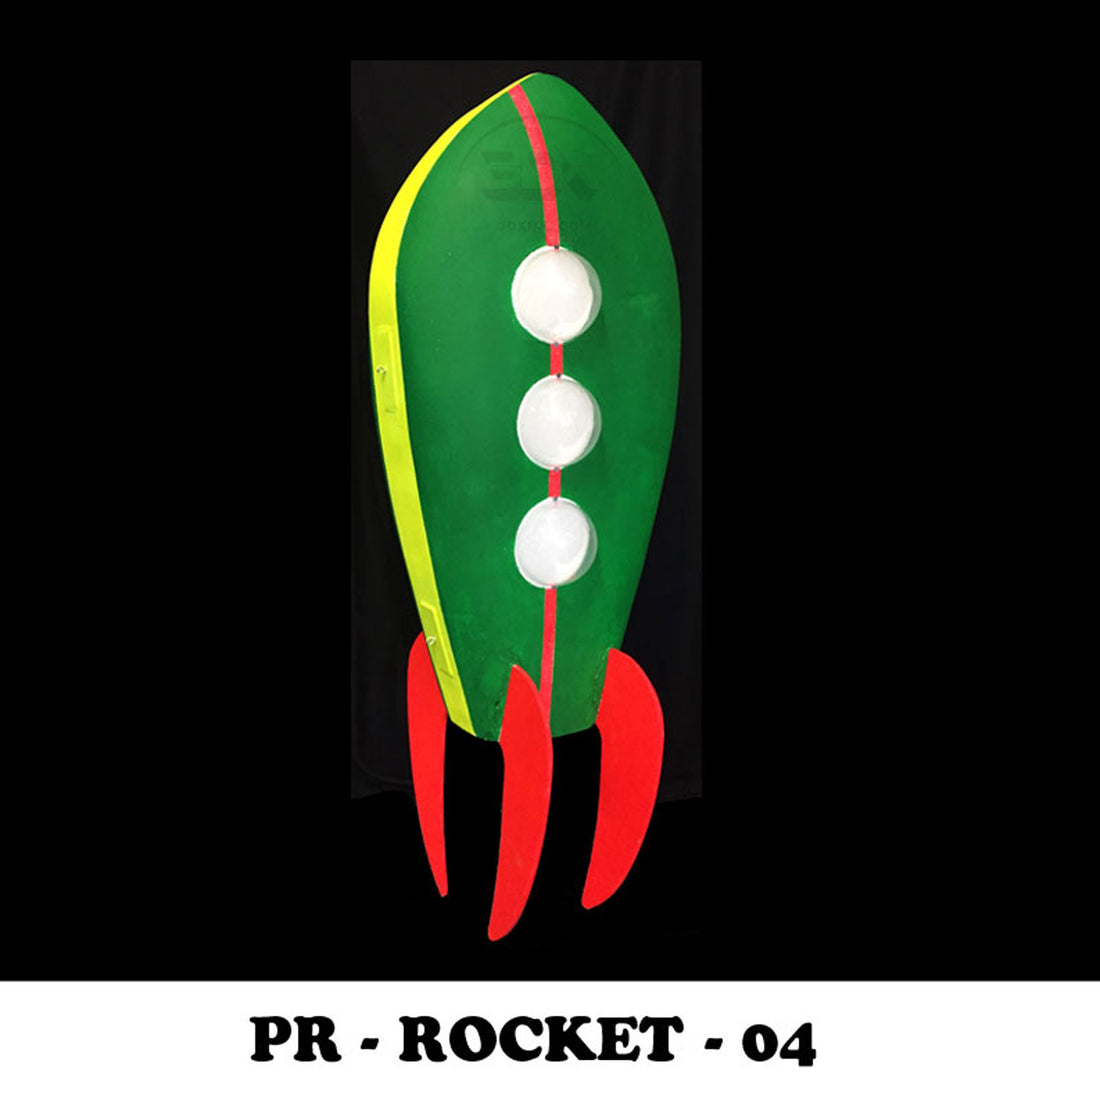 PR - ROCKET - 04